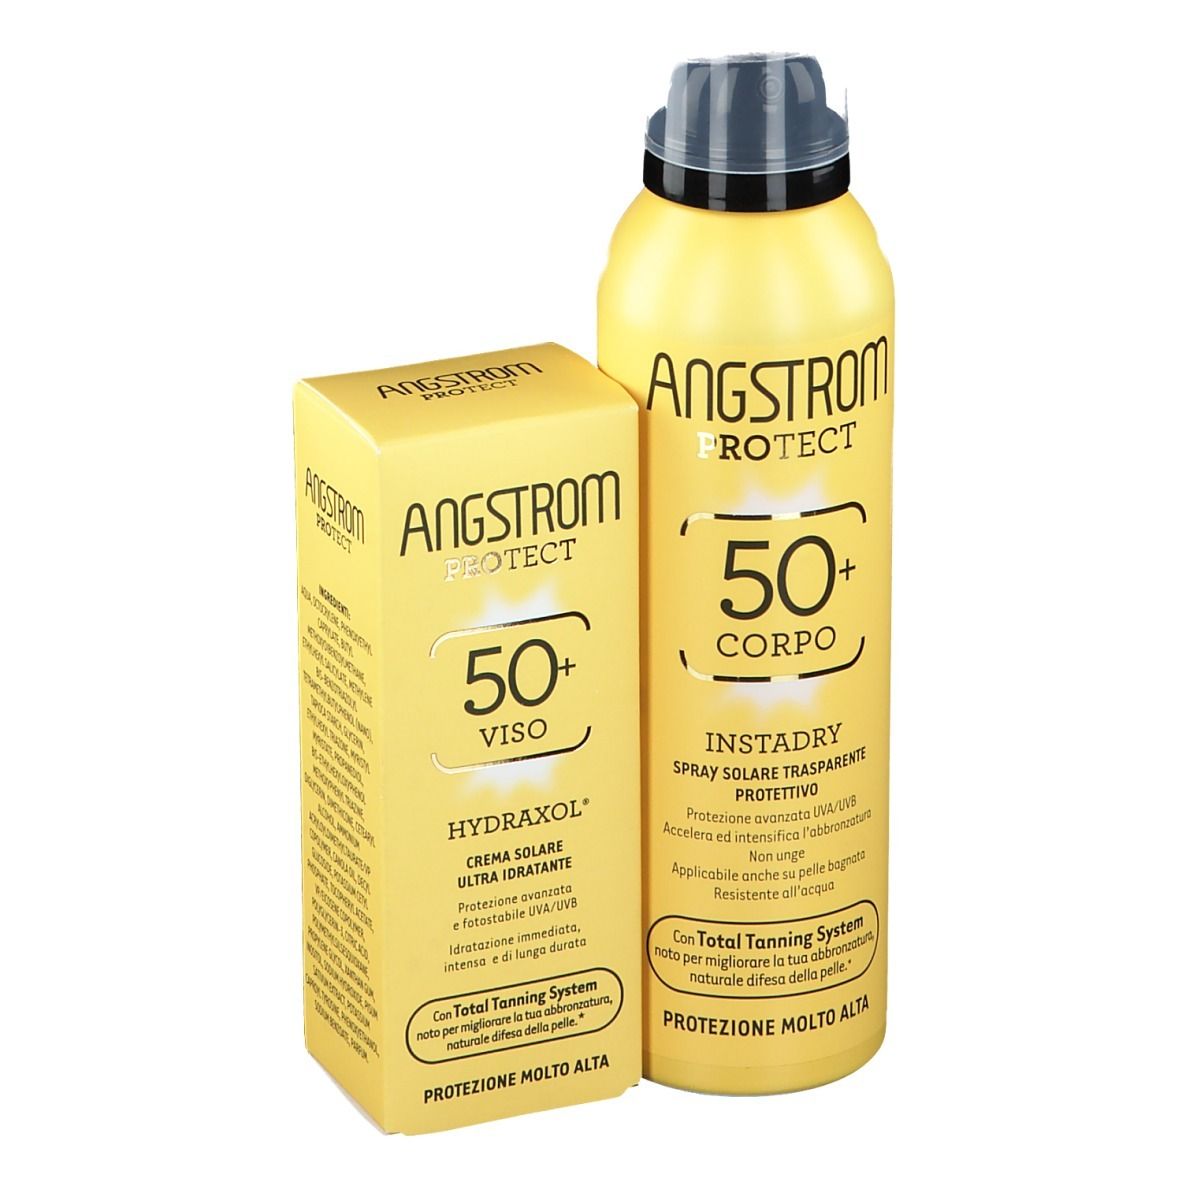 ANGSTROM PROTECT Crema Solare Viso 50+ e Spray Solare Corpo 50+